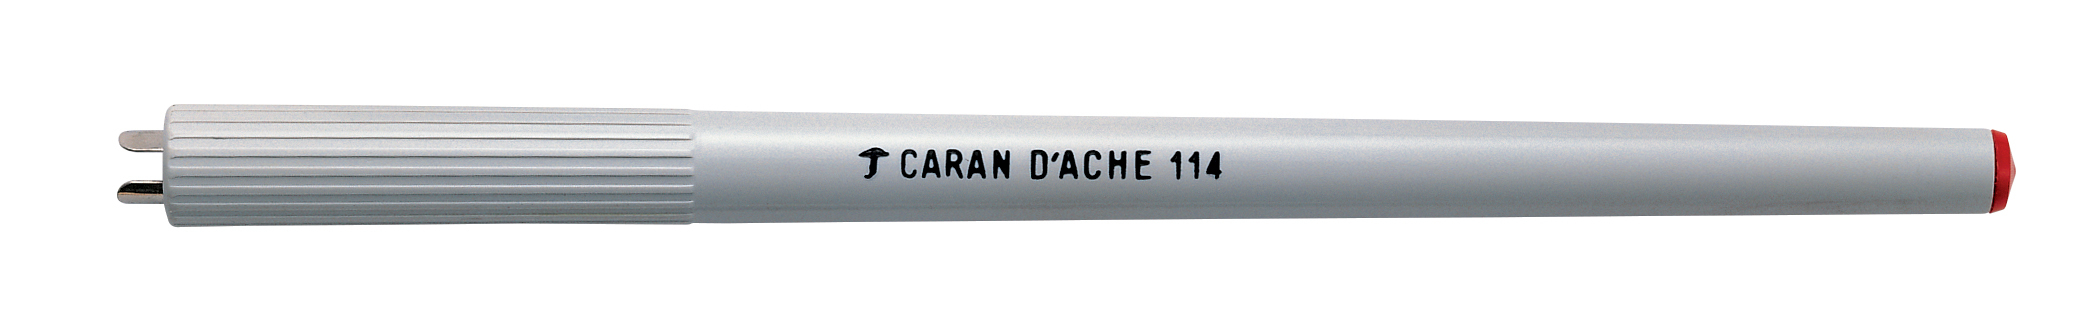 CARAN D'ACHE Federhalter 114.000 gris PVC